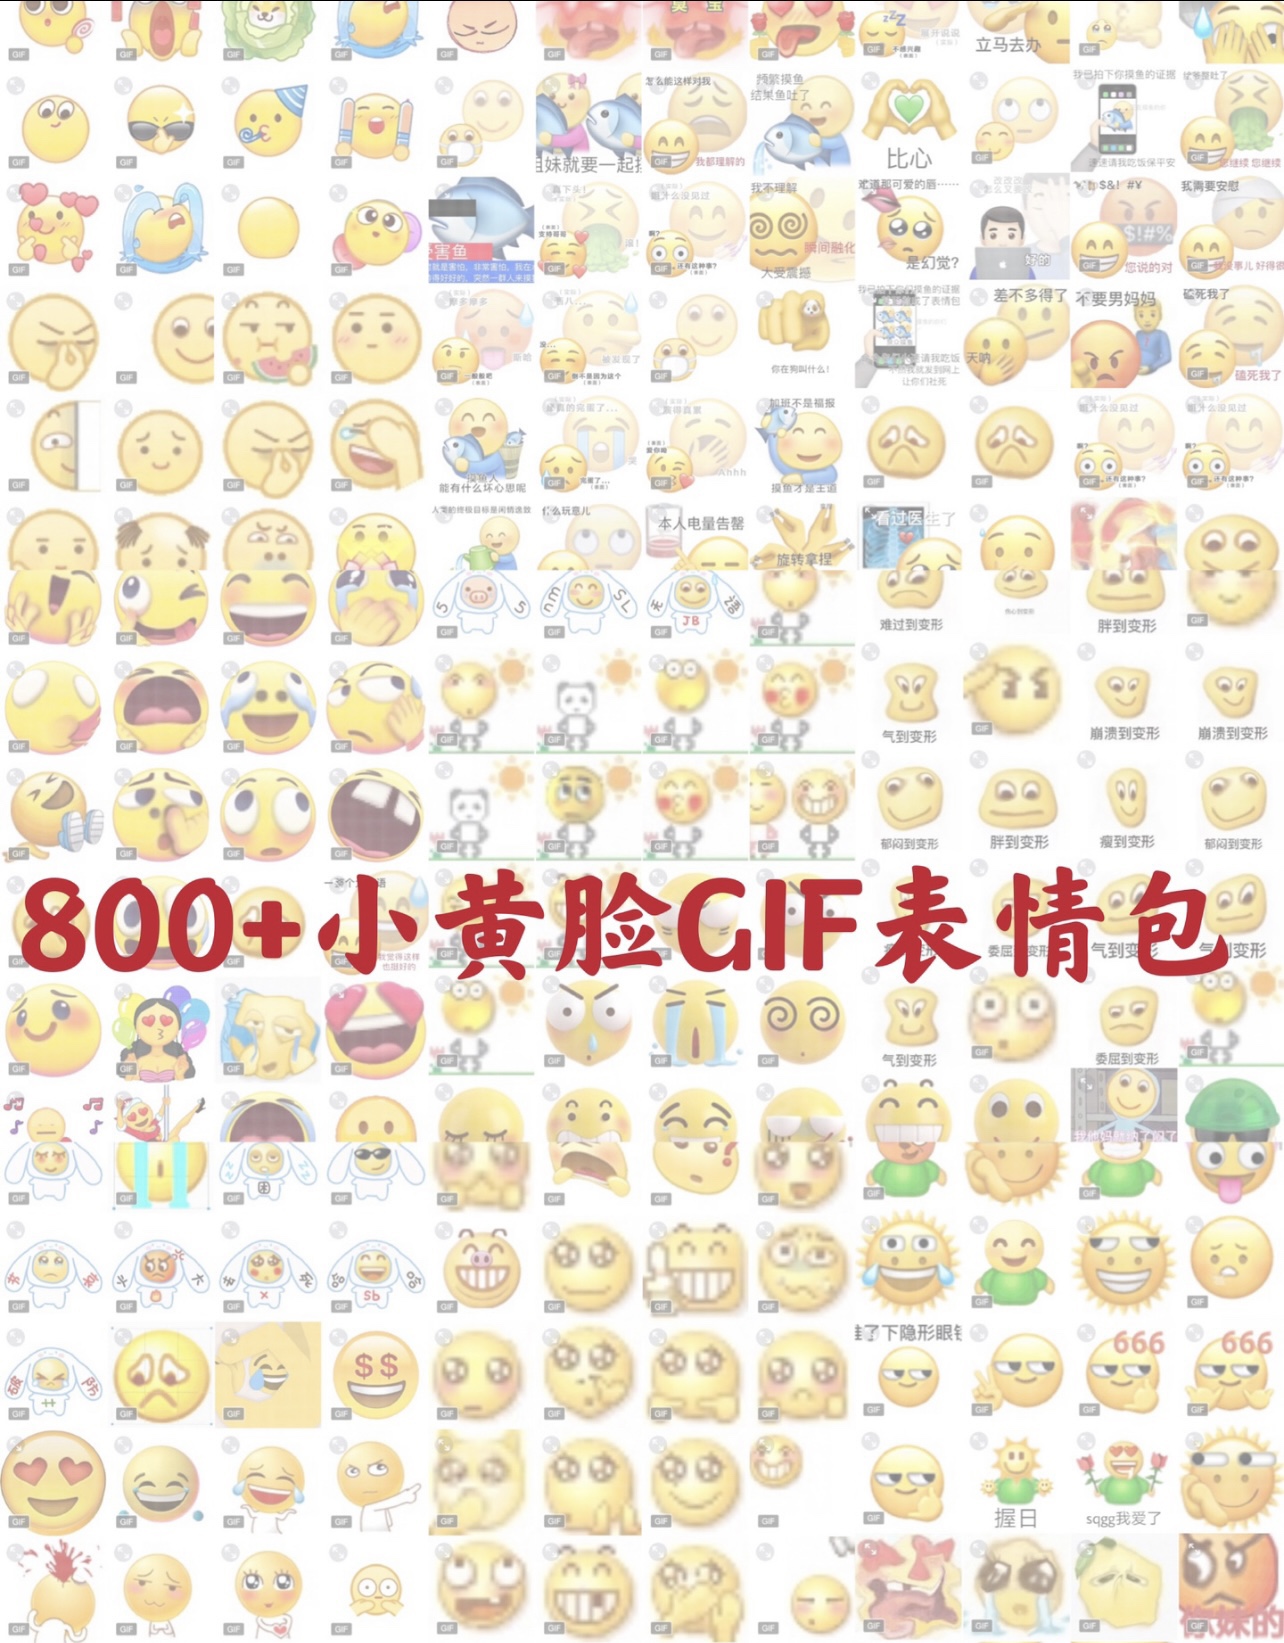 小黄脸搞笑gif动态表情包模板 卡通 原创 标价800张 不教使用